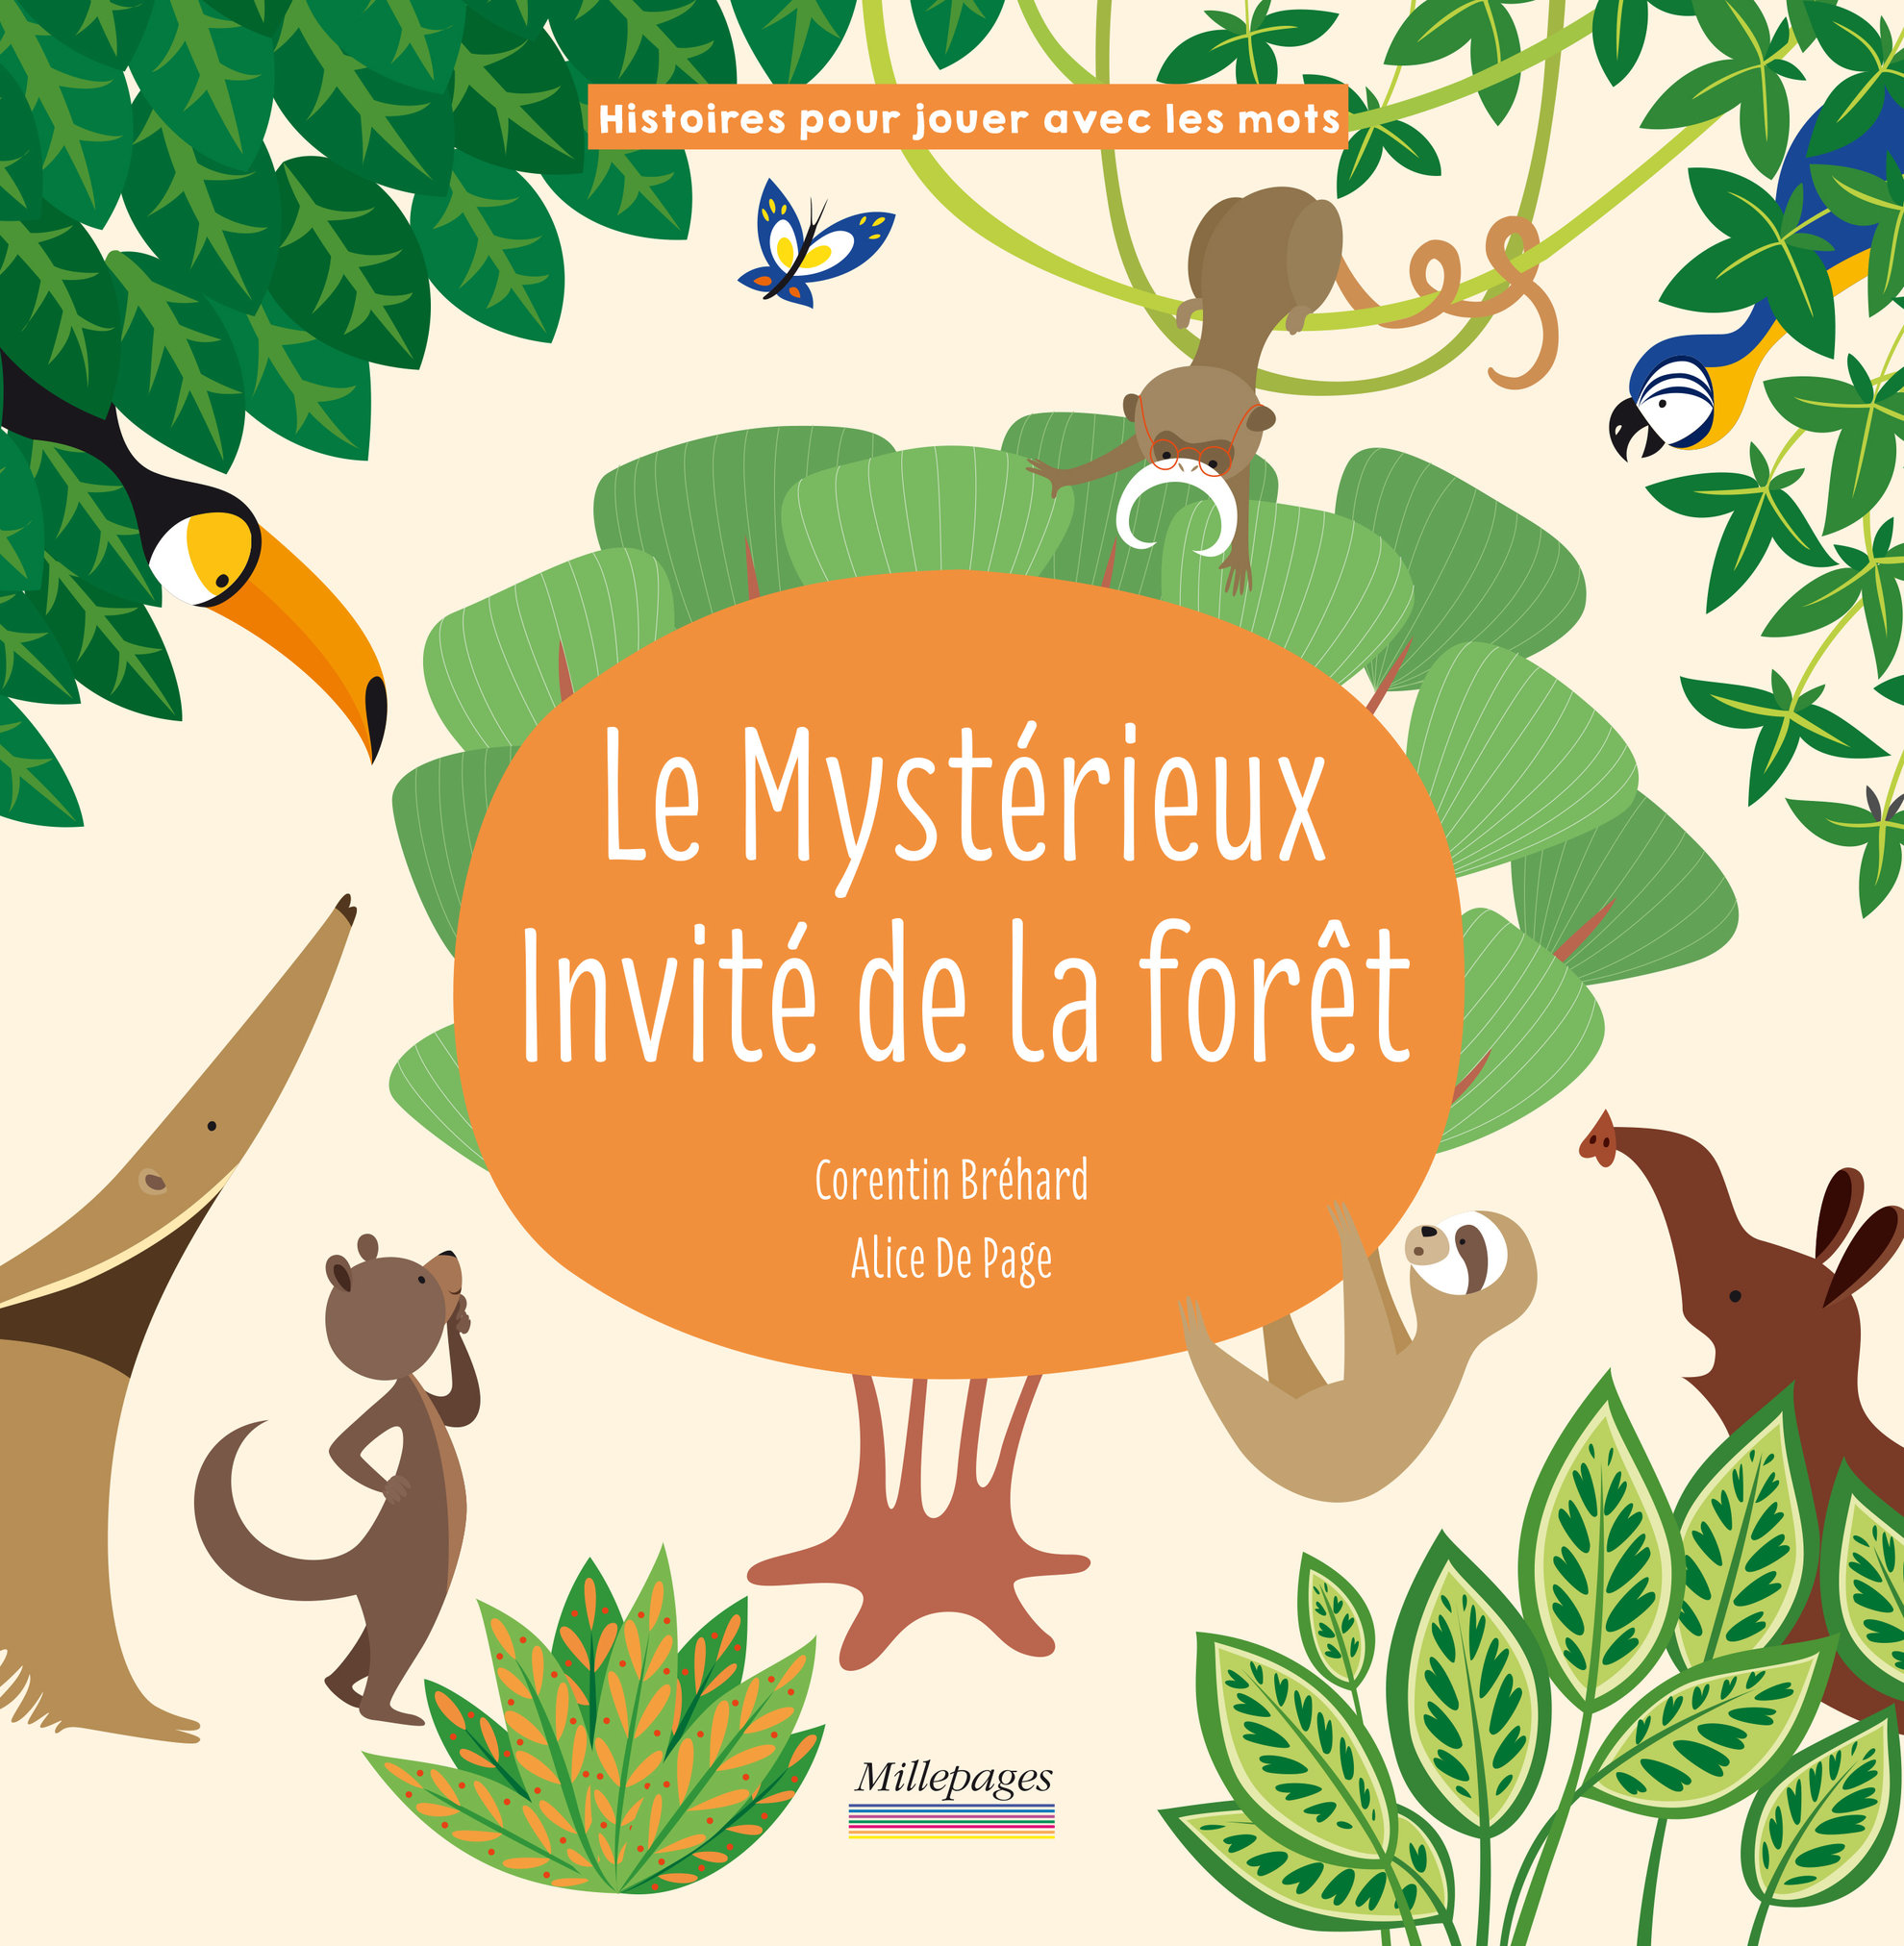 Le mystérieux invité de la forêt, Millepages, 2019